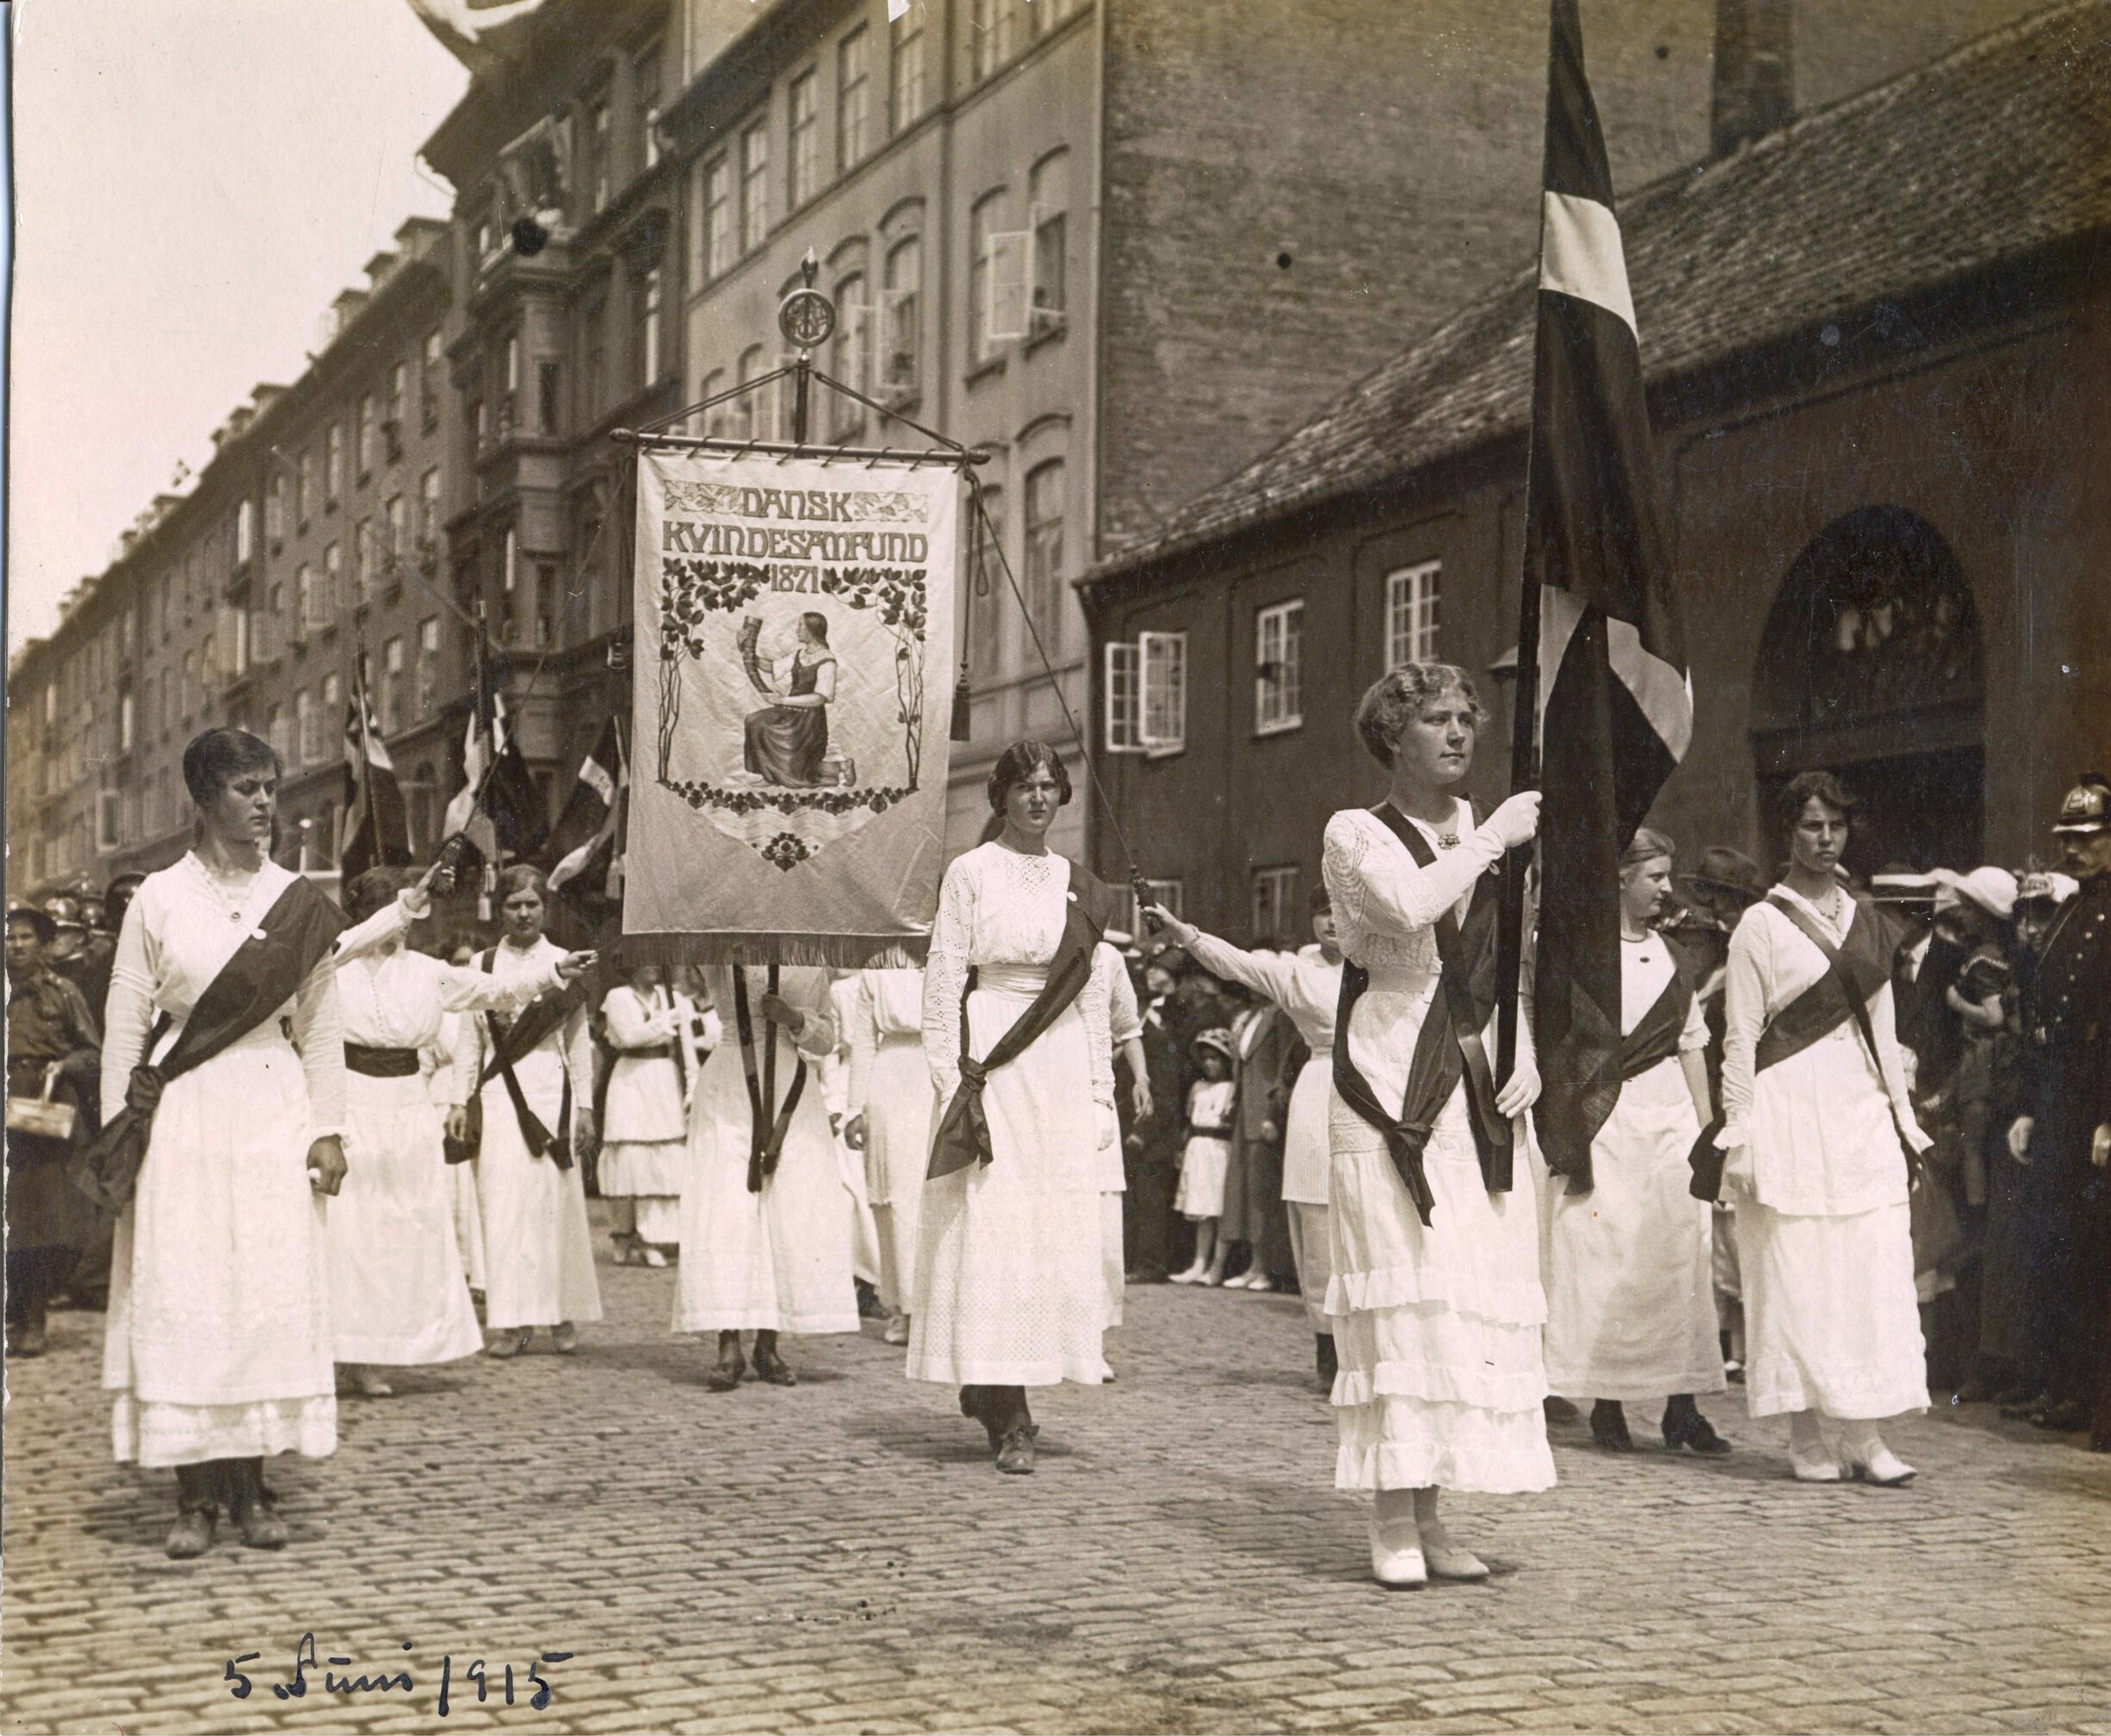 Ved valget til Rigsdagen i 1909 demonstrerede kvinder i hele landet ved at klæbe denne plakat op i valglokalerne